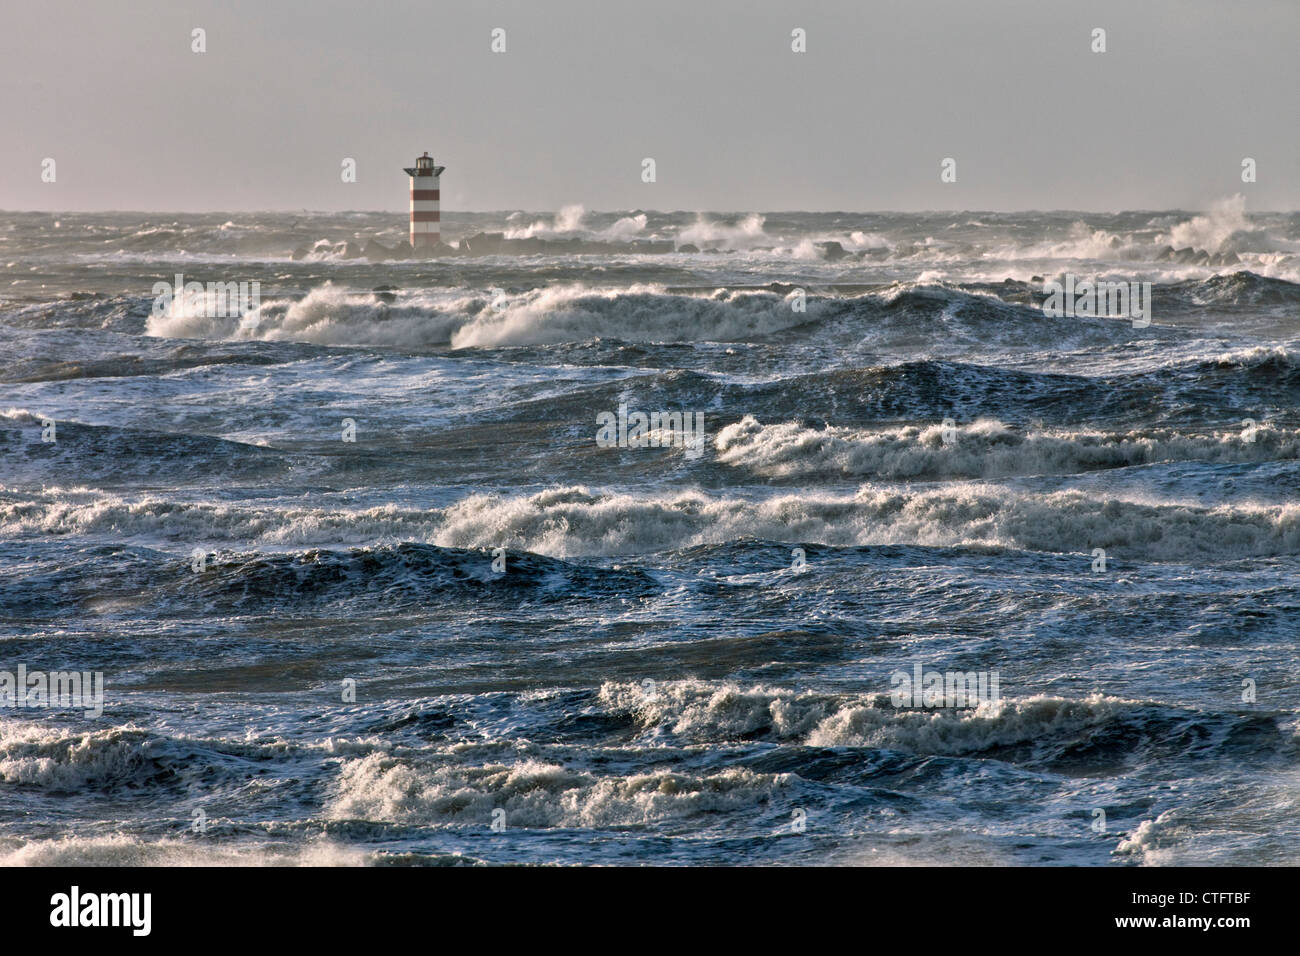 Die Niederlande, IJmuiden, Sturm. Wellen gegen Leuchtturm oder Leuchtfeuer. Stockfoto